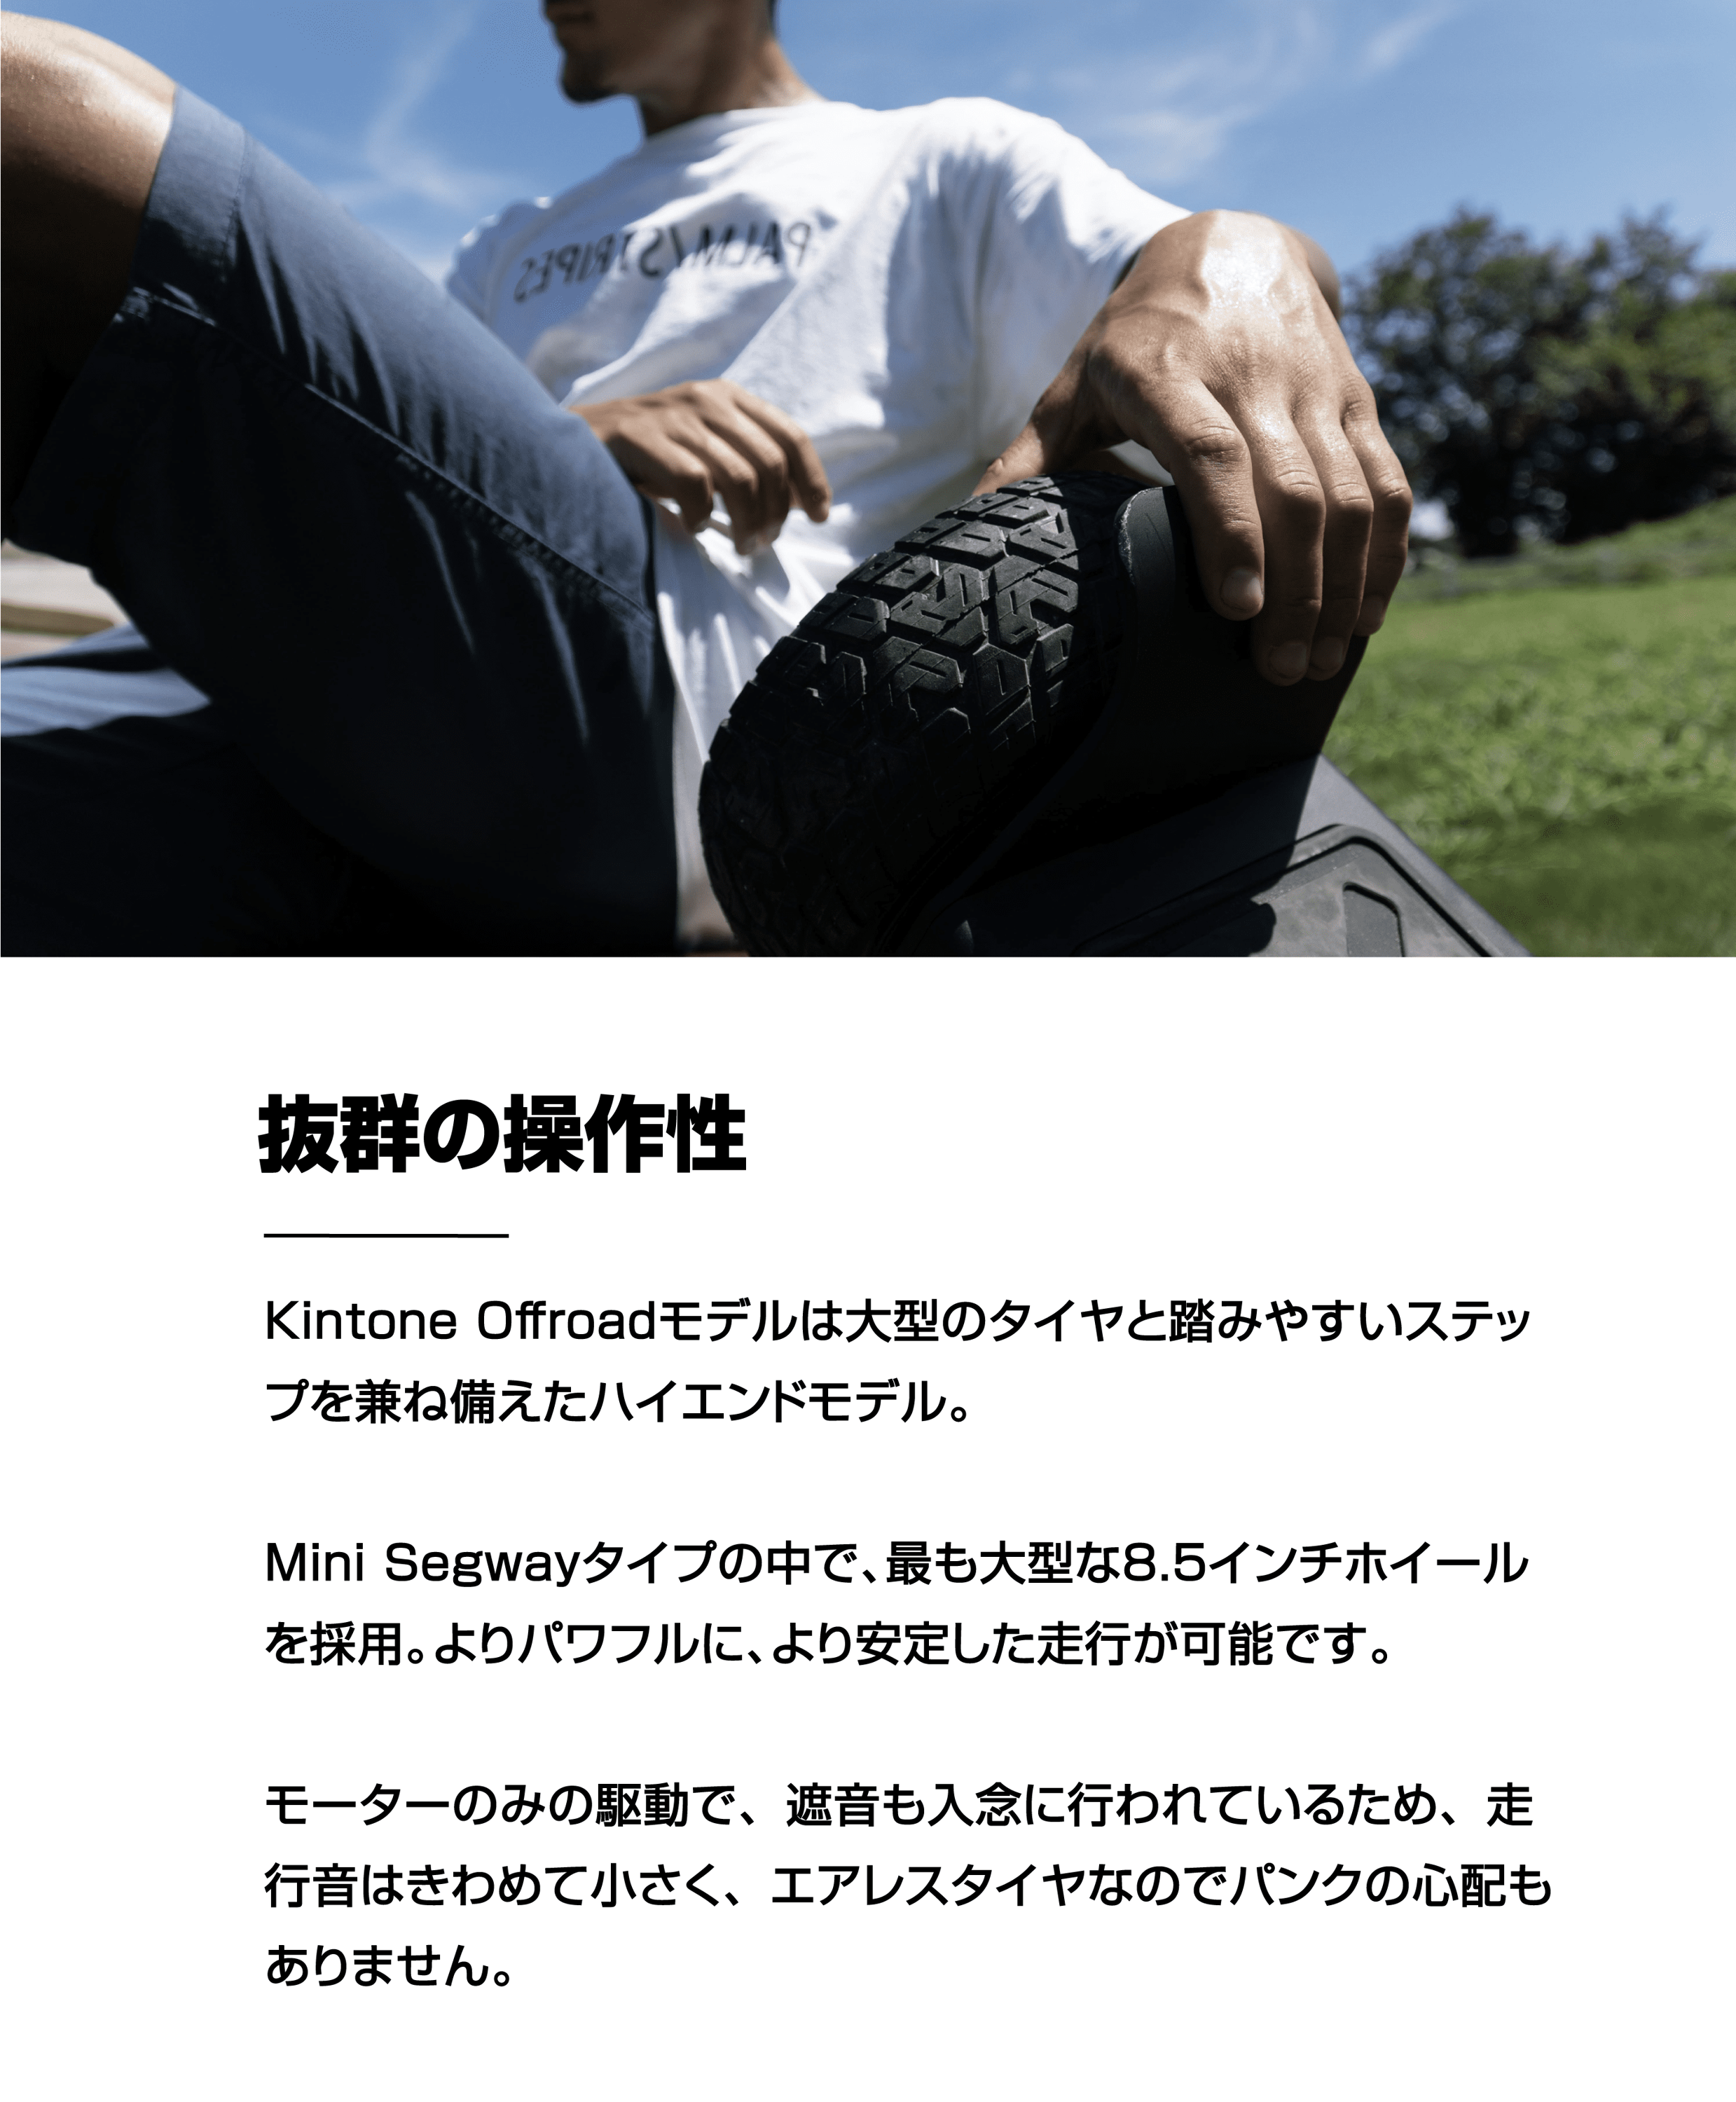 キントーン オフロード | Kintone Offroad (ミニセグウェイ) – kintone